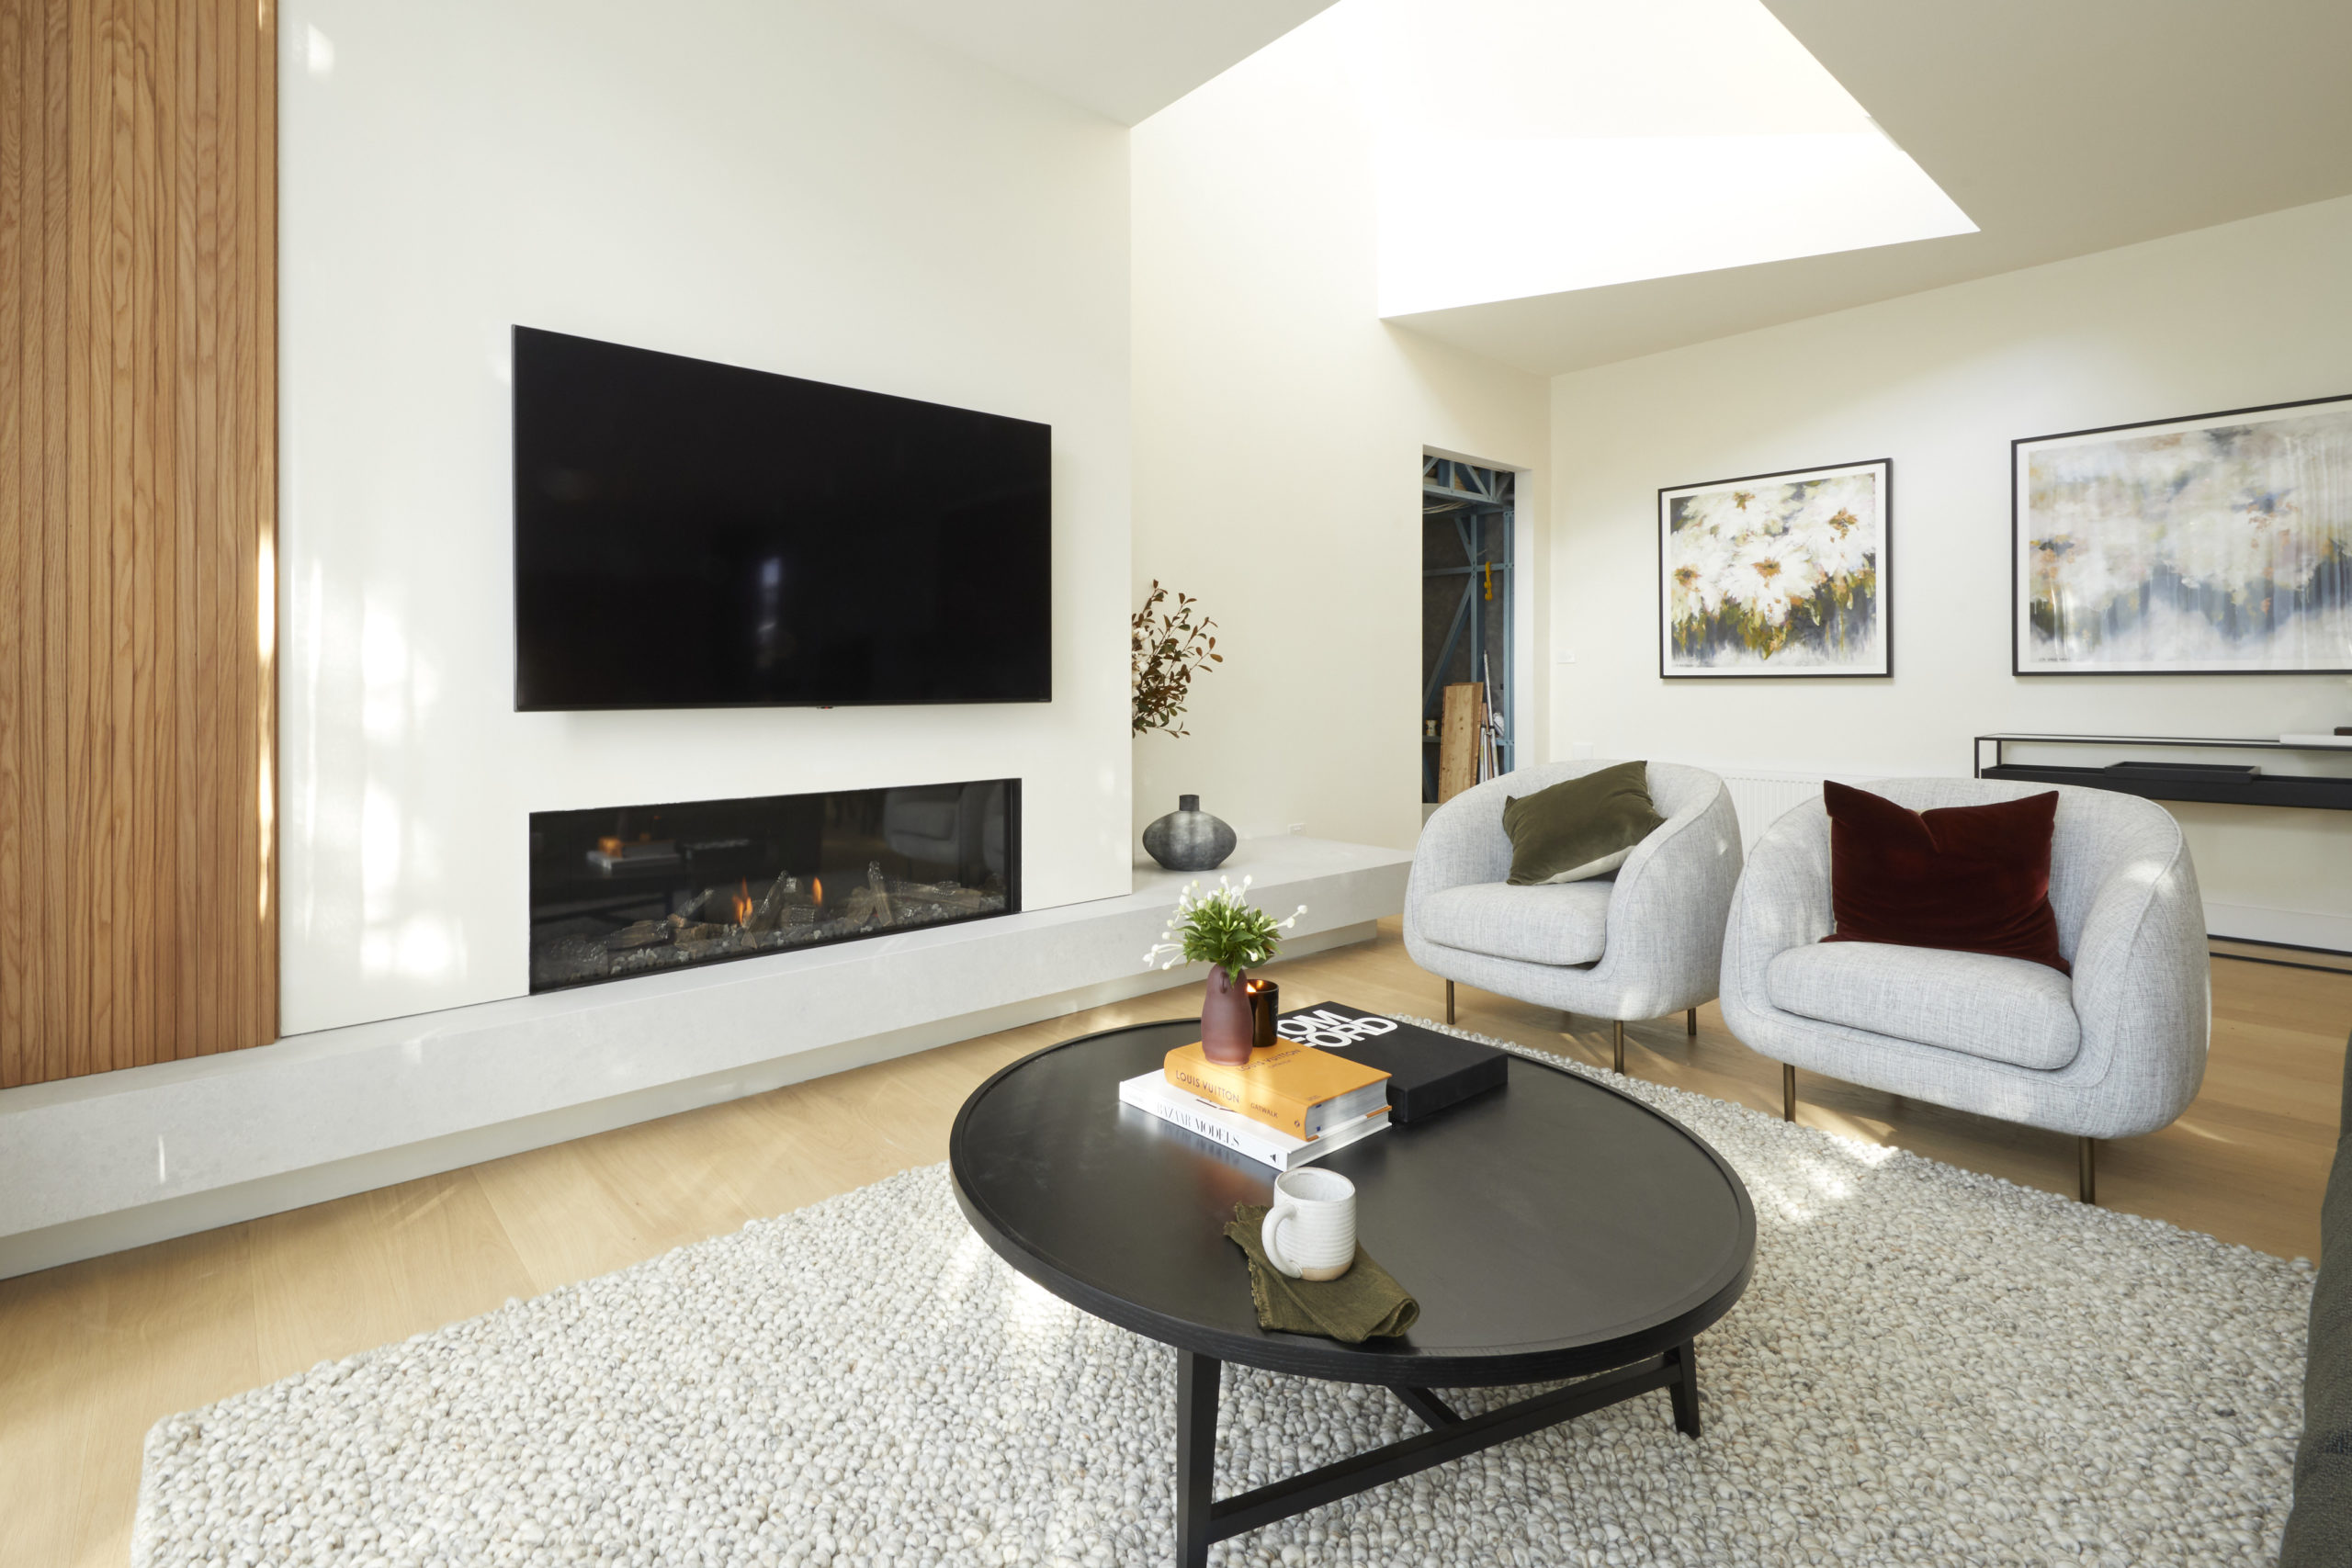 2020 living room lighting